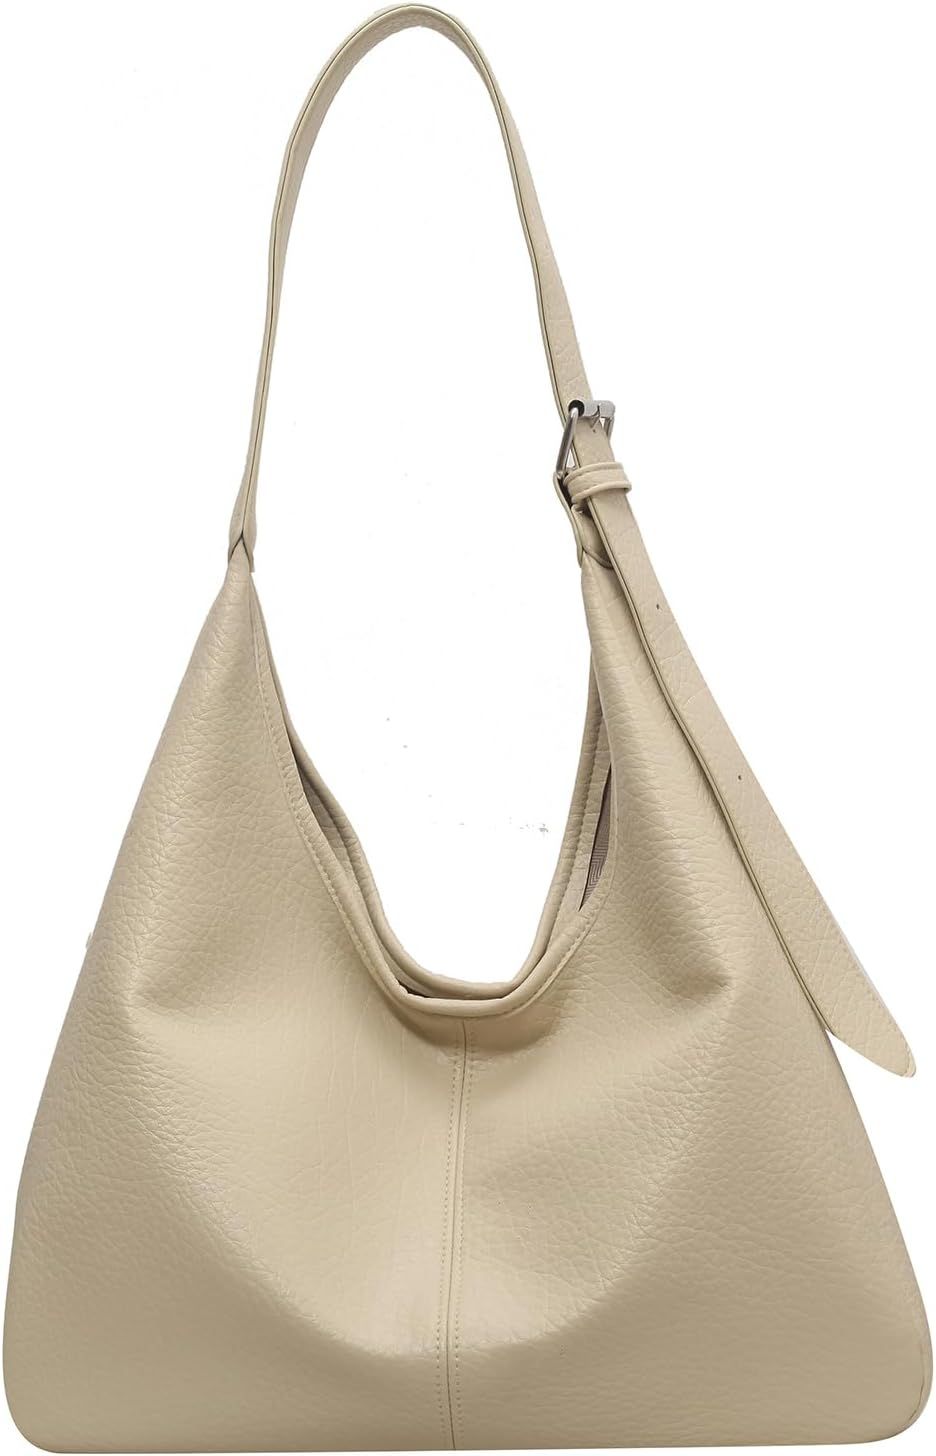 ONE2MAY Tote Bag Satchel Handbag Vintage Tote Shoulder Bag Top Handle Shoulder Bag Oversized Purs... | Amazon (US)